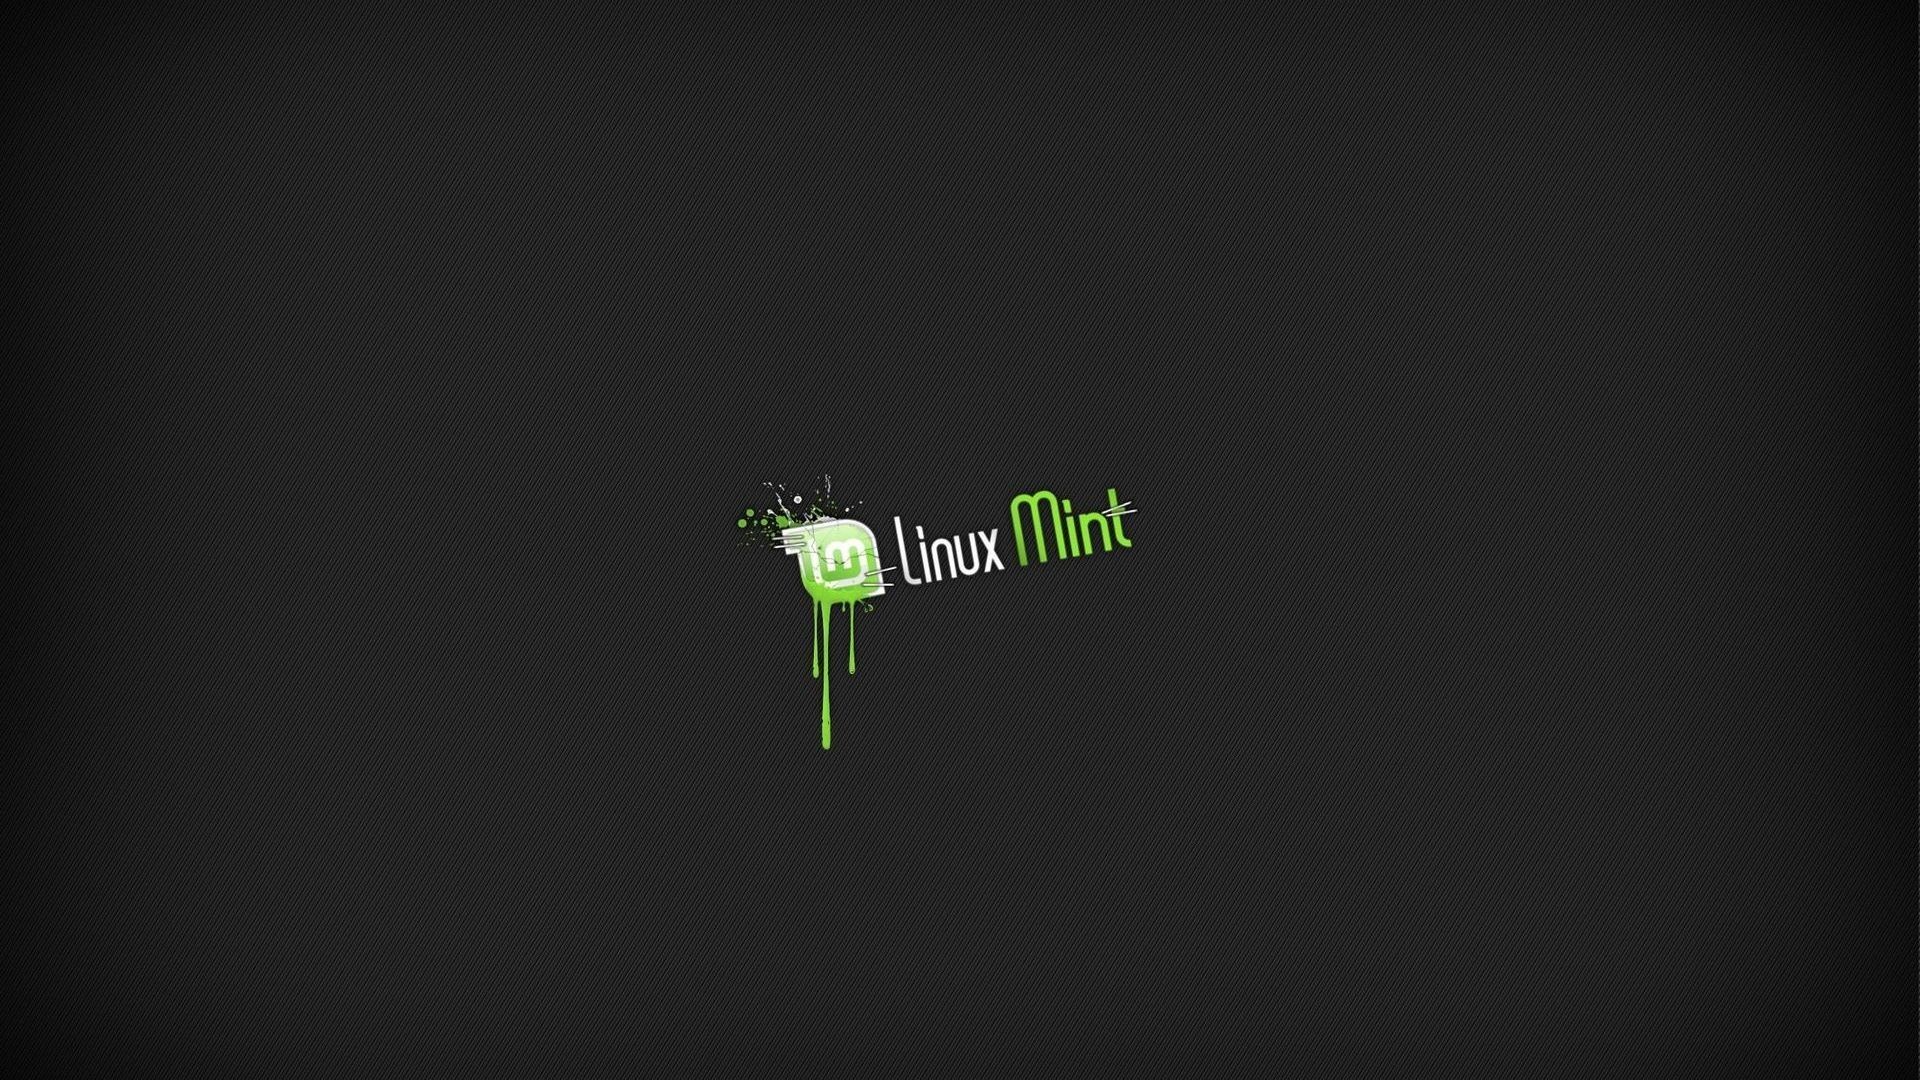 Linux Mint Wallpaper 1920x1080 1920x1080 para teléfonos | CyberMX en